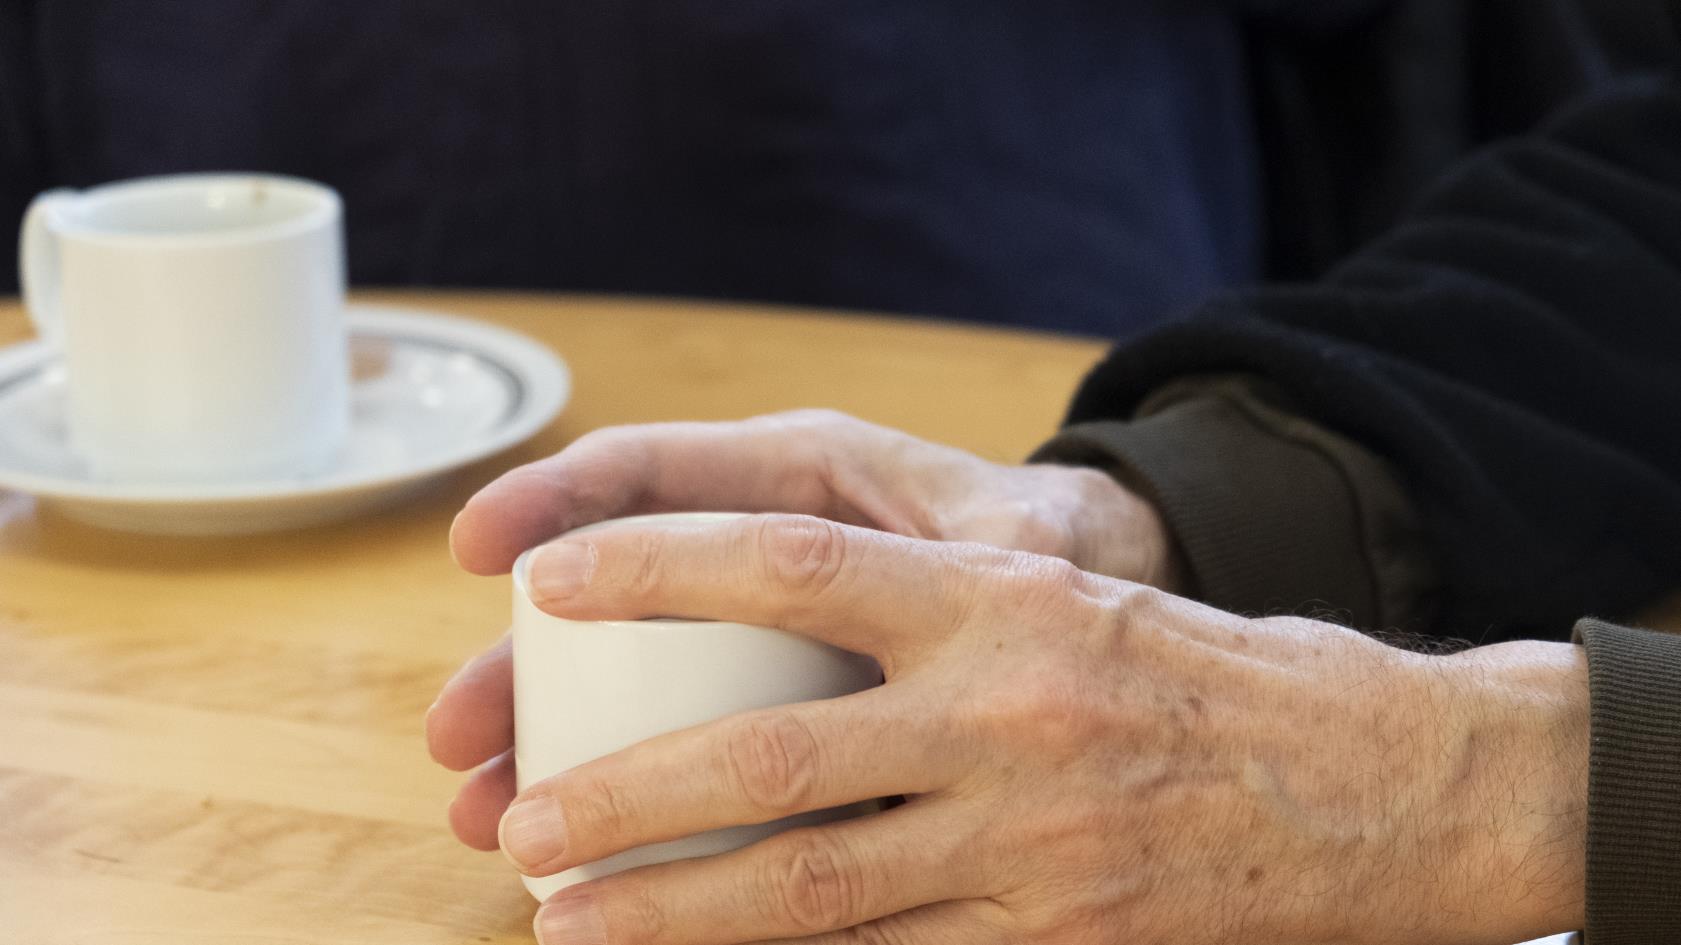 Någon håller händerna runt en kaffekopp på bordet.